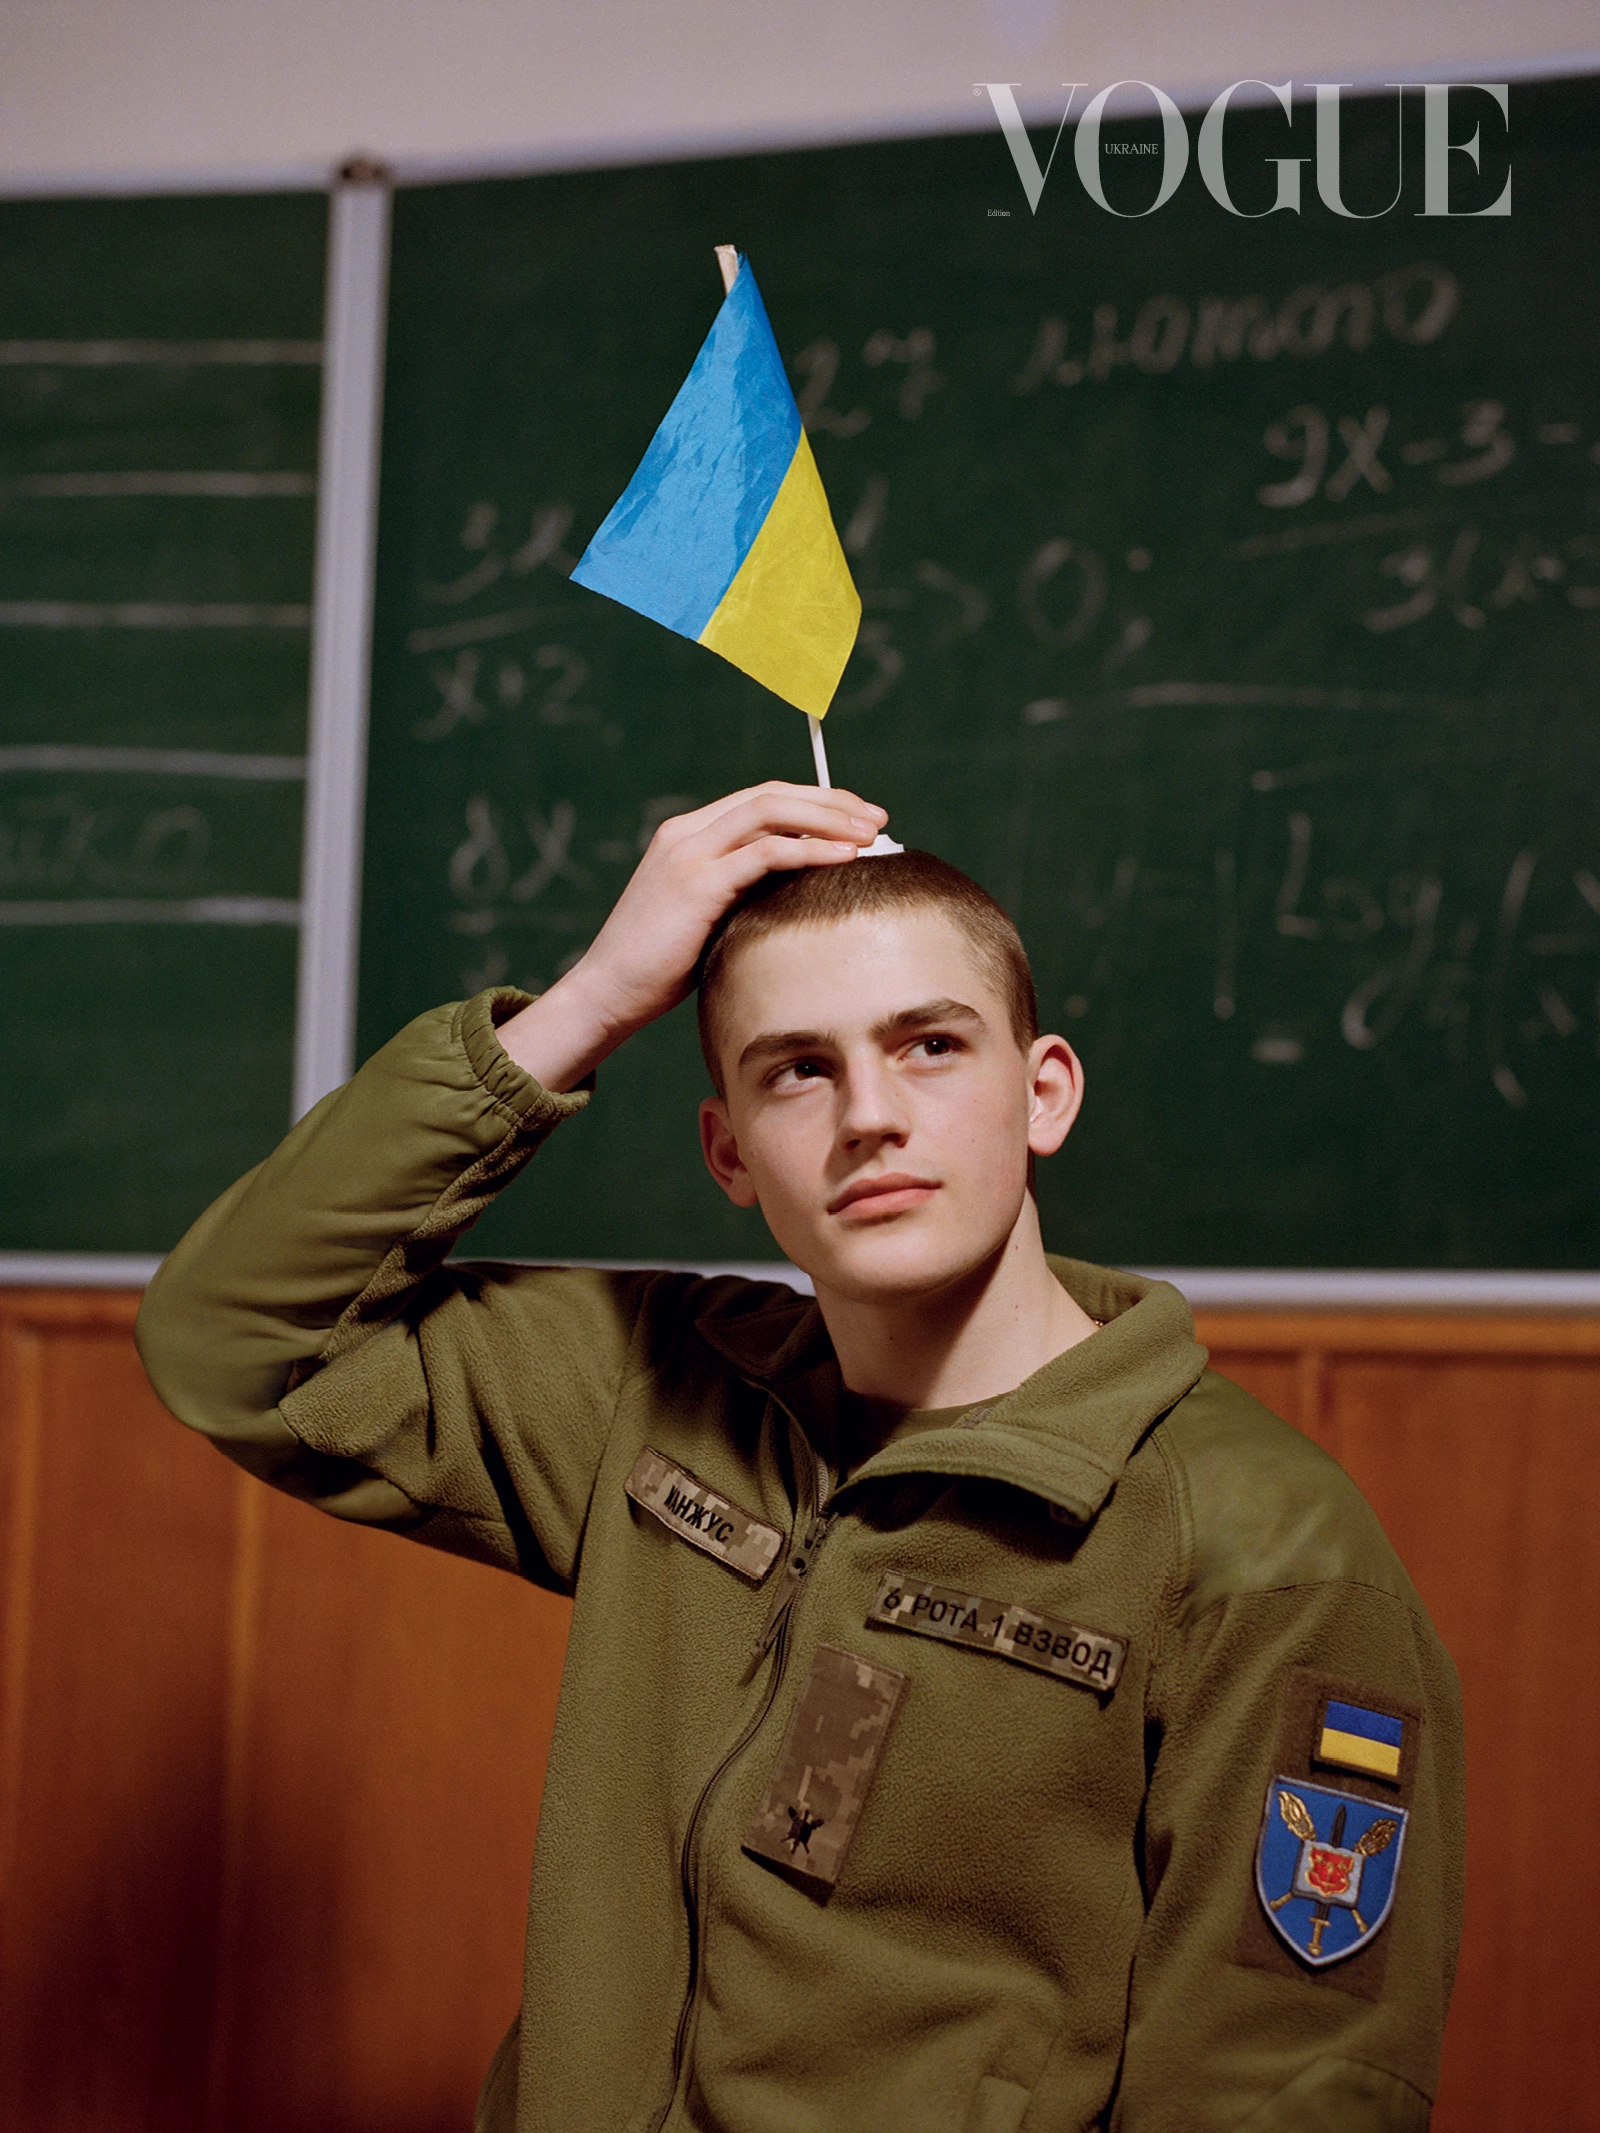 Курсант Військового ліцею імені Івана Богуна. Фото: Бретт Ллойд, Vogue, Україна 11